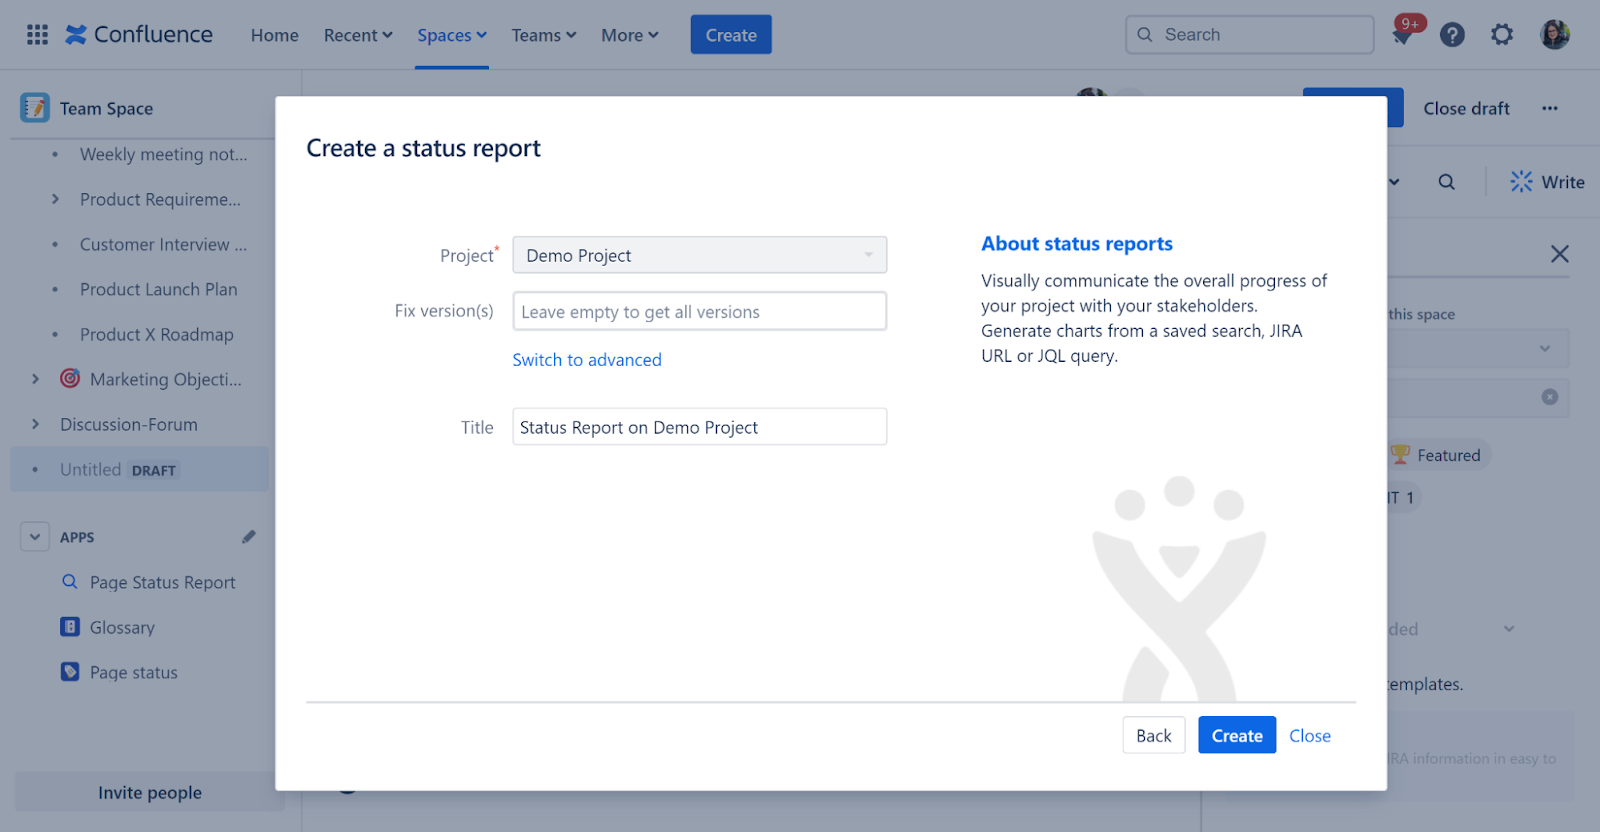 Create a status report